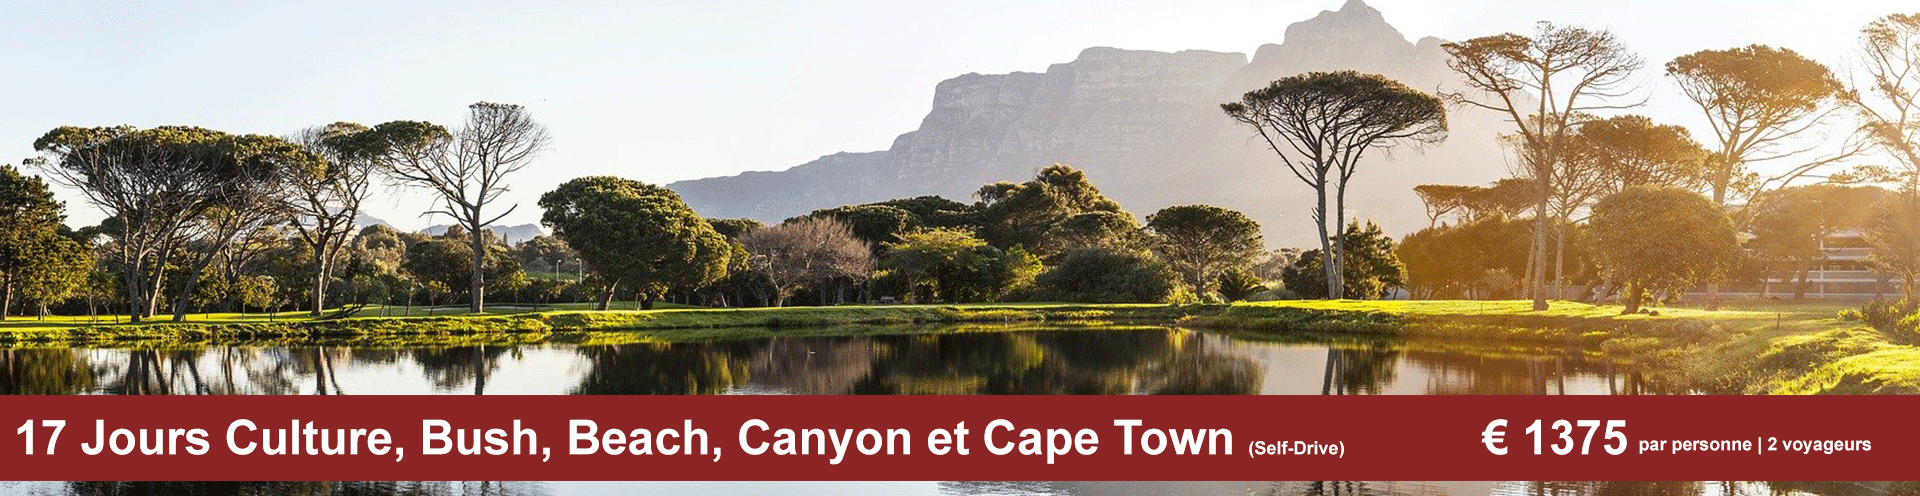 17 Jours Culture, Bush, Beach, Canyon et Cape Town